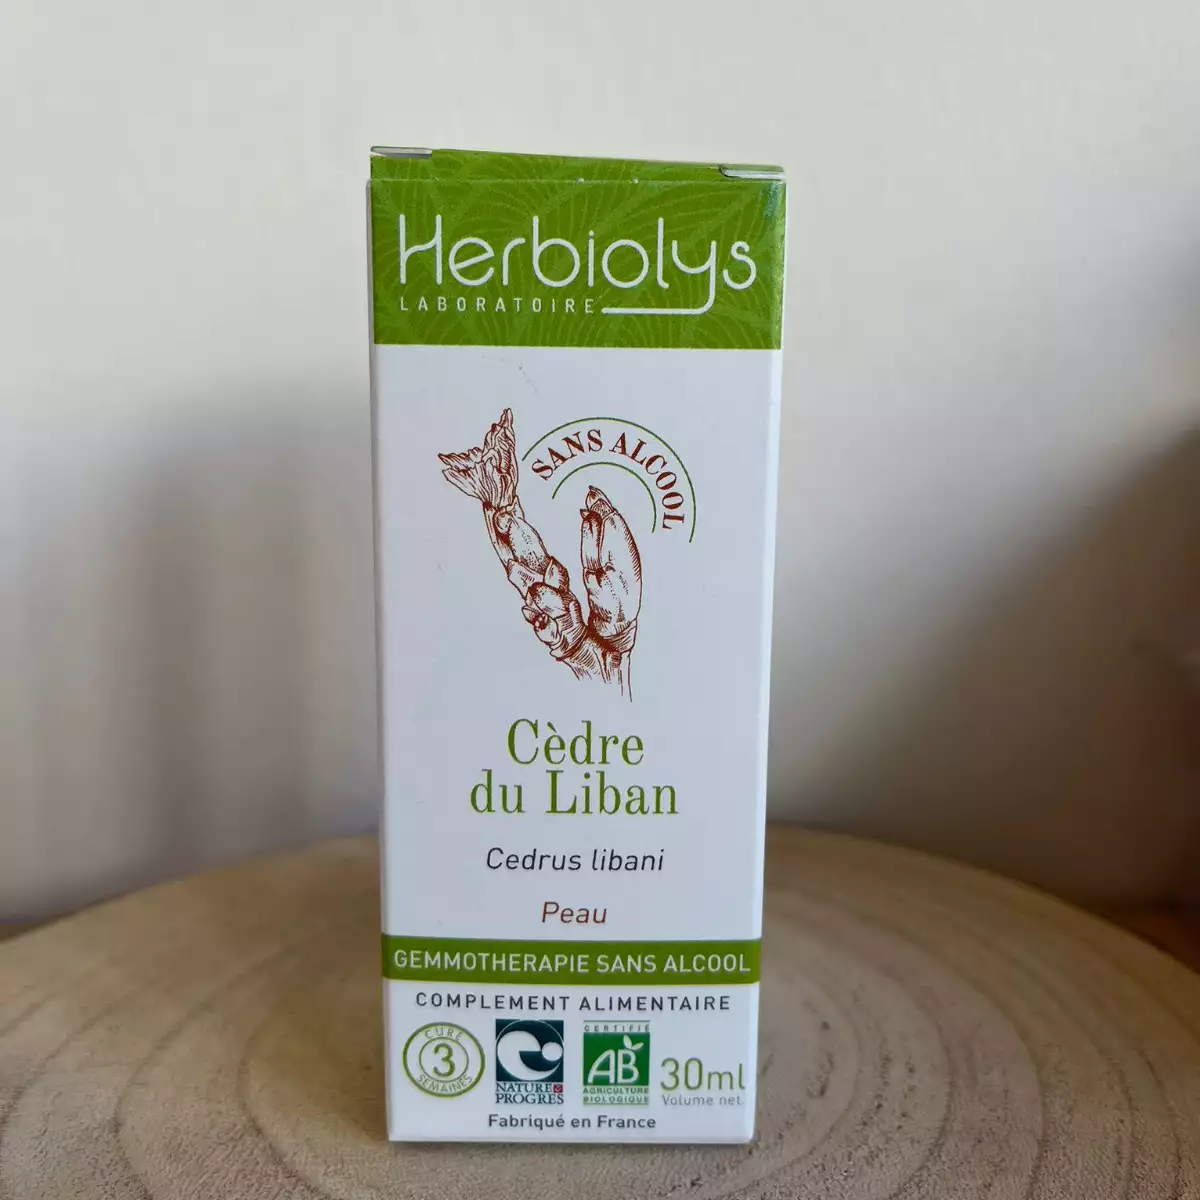 Cèdre du Liban - Herbiolys